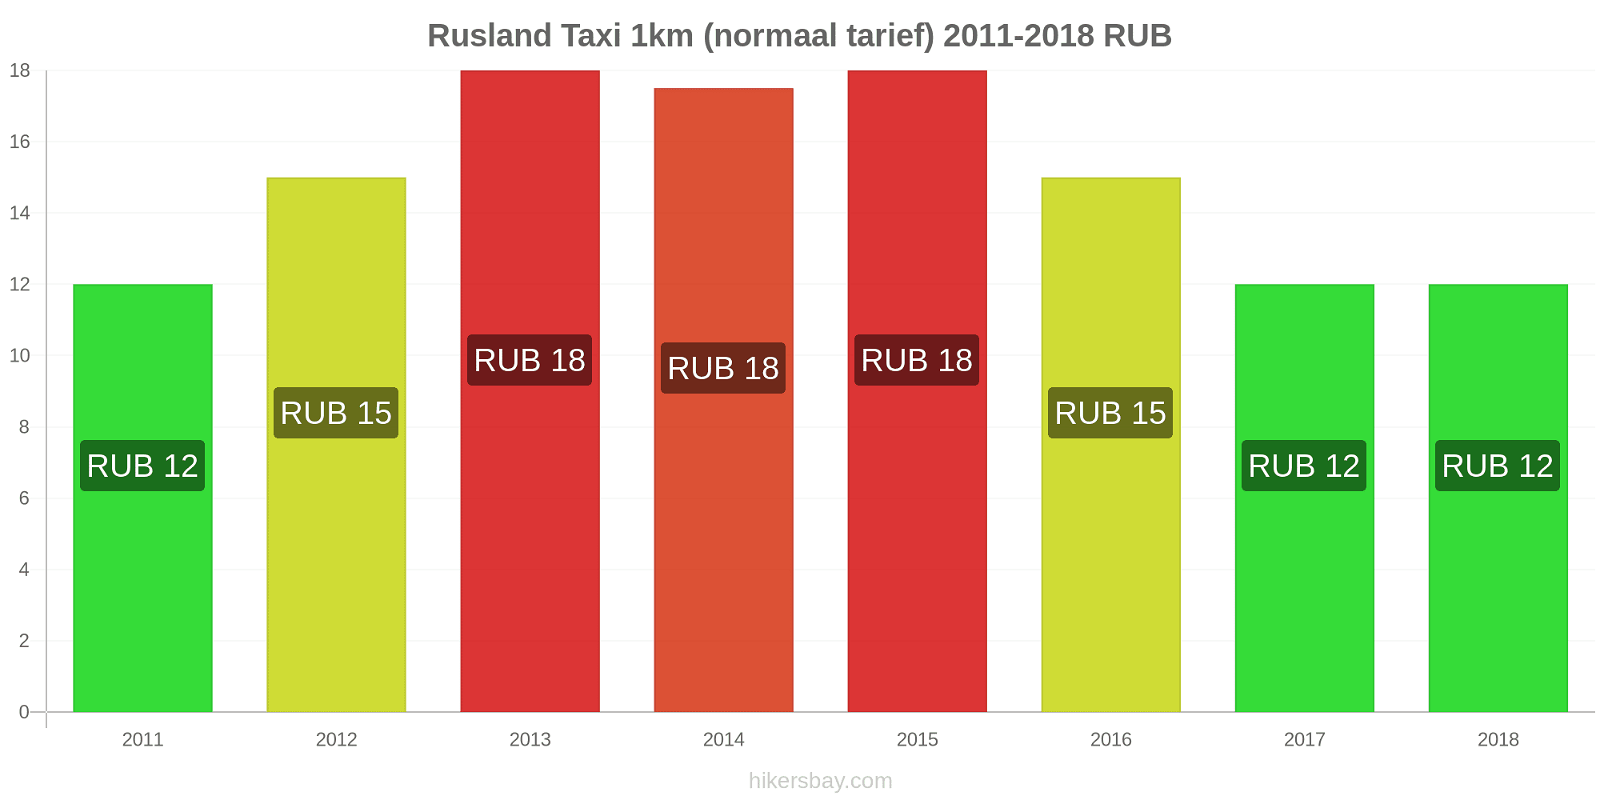 Rusland prijswijzigingen Taxi 1km (normaal tarief) hikersbay.com